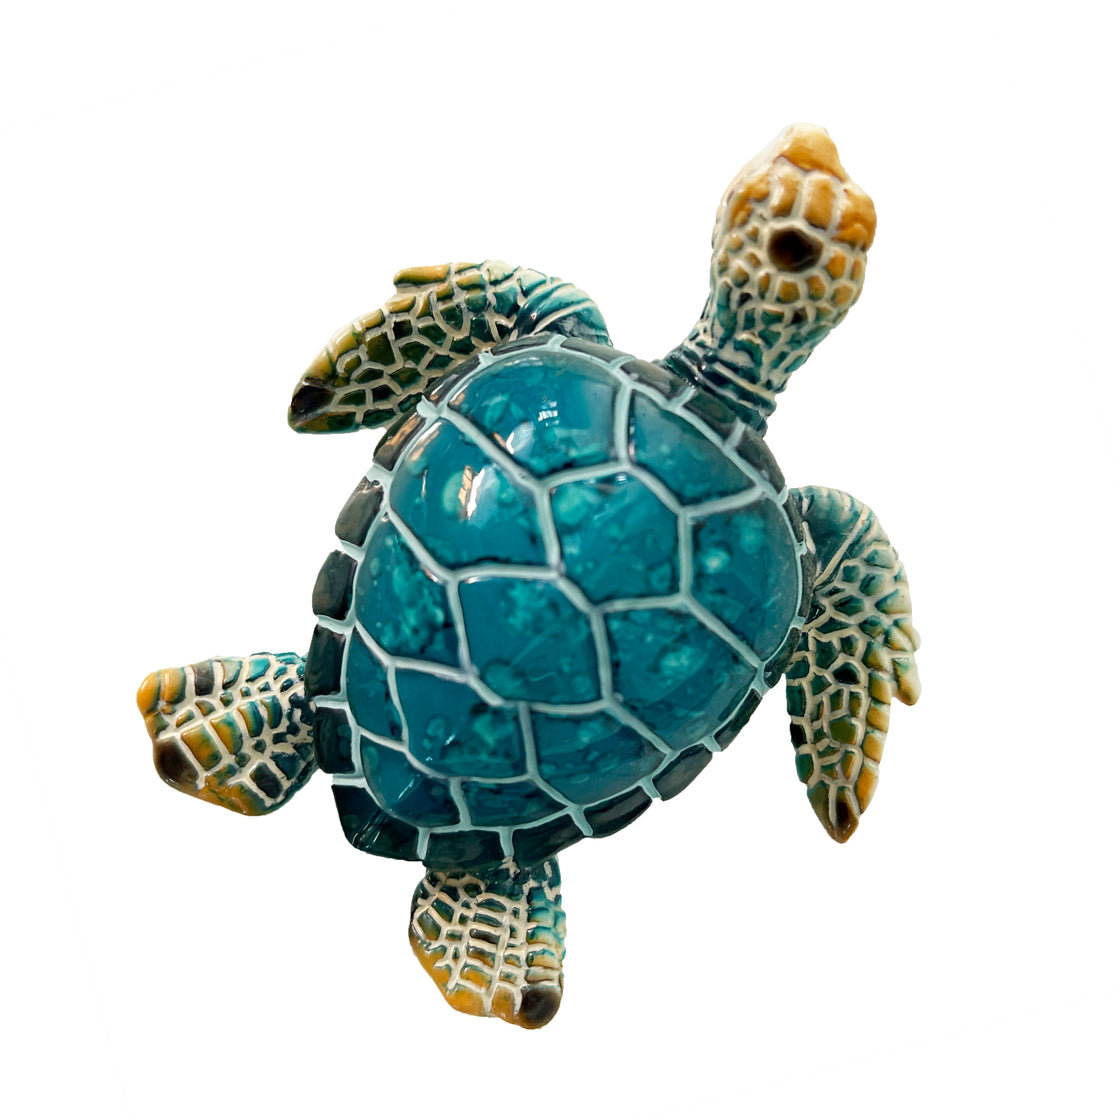 Decorative Sea Turtle Fridge Magnet - Hand Painted Ceramic Aquatic Life Figurine